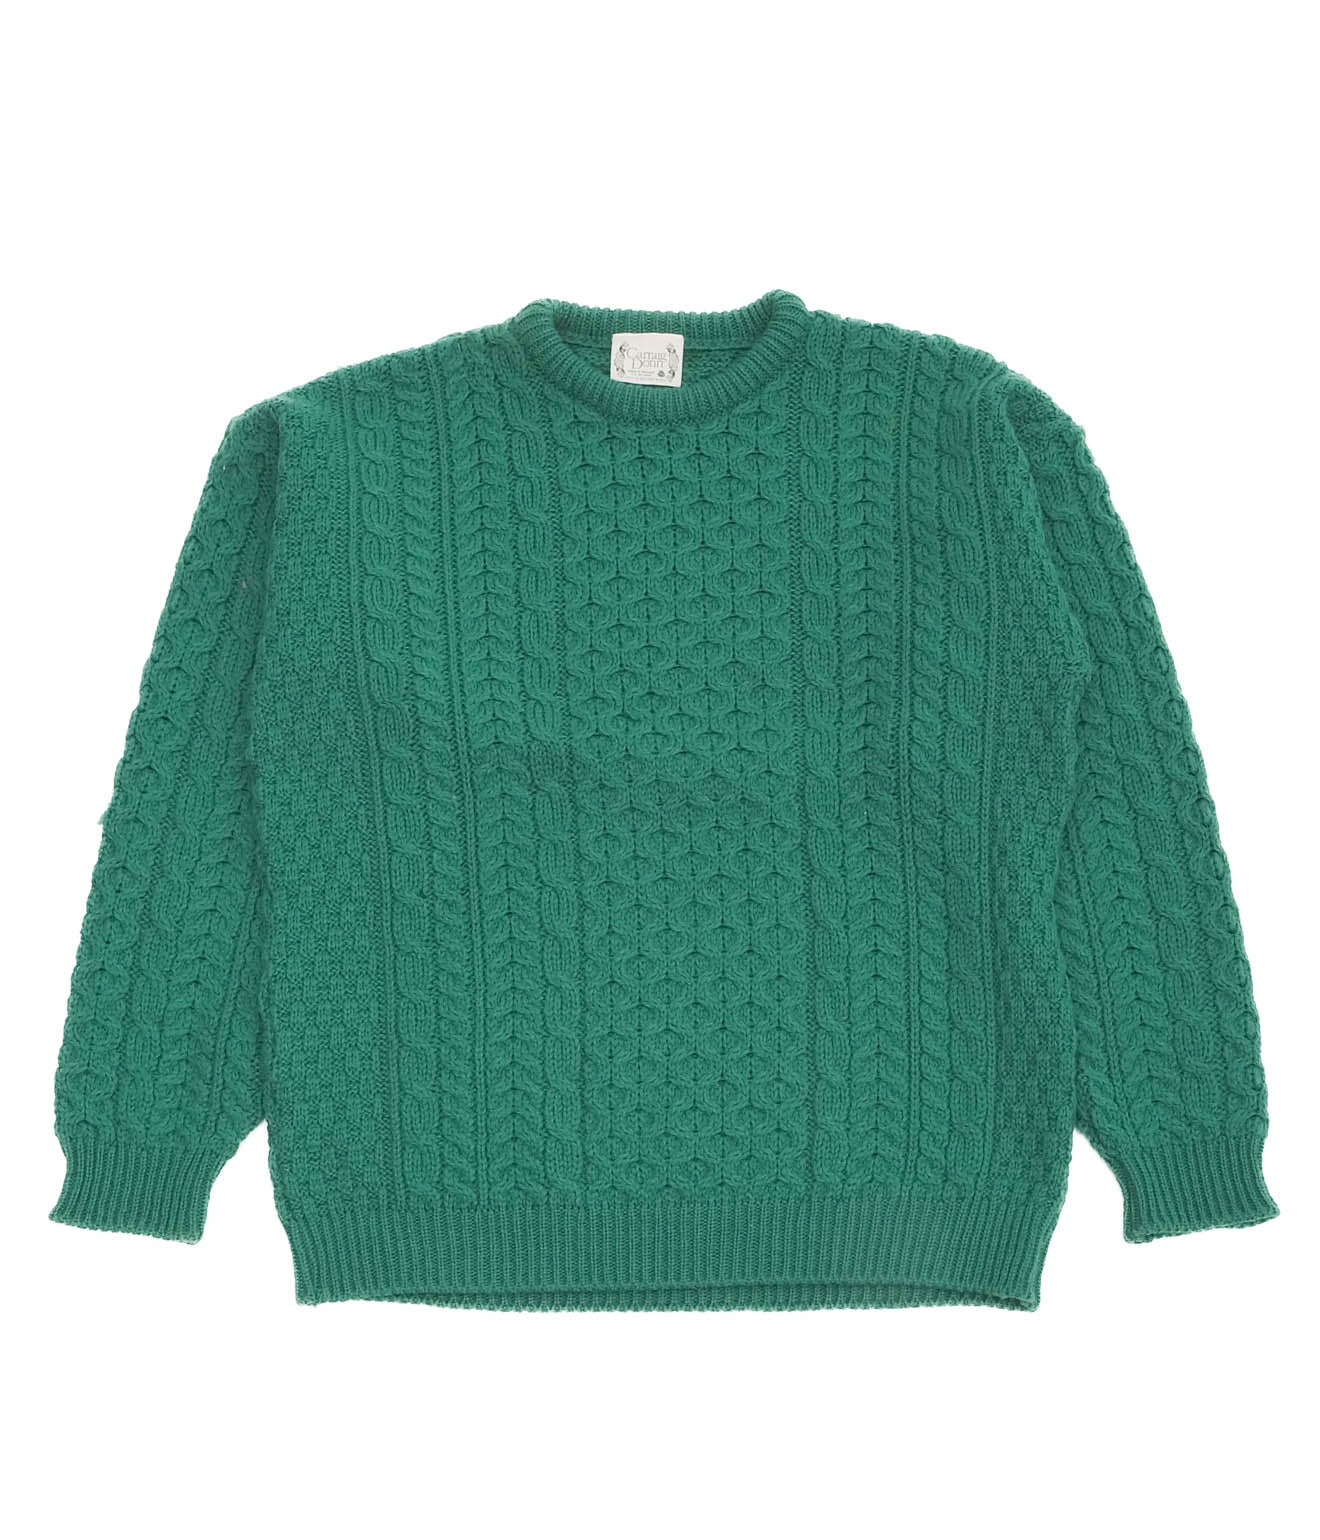 Fisherman's Sweaters (Green)